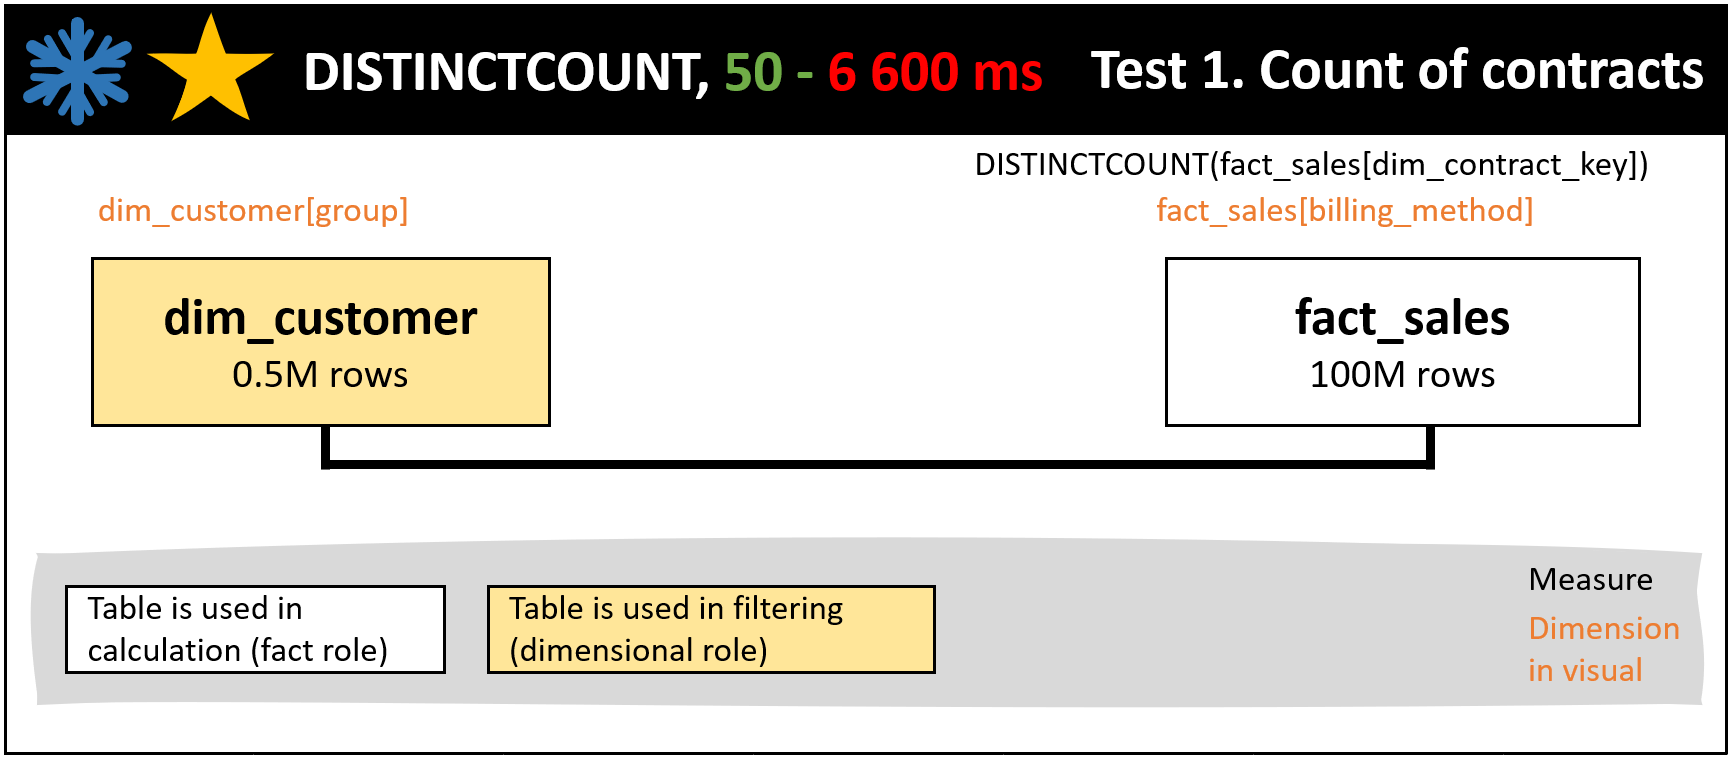 Figure 6. Test 1, DISTINCTCOUNT